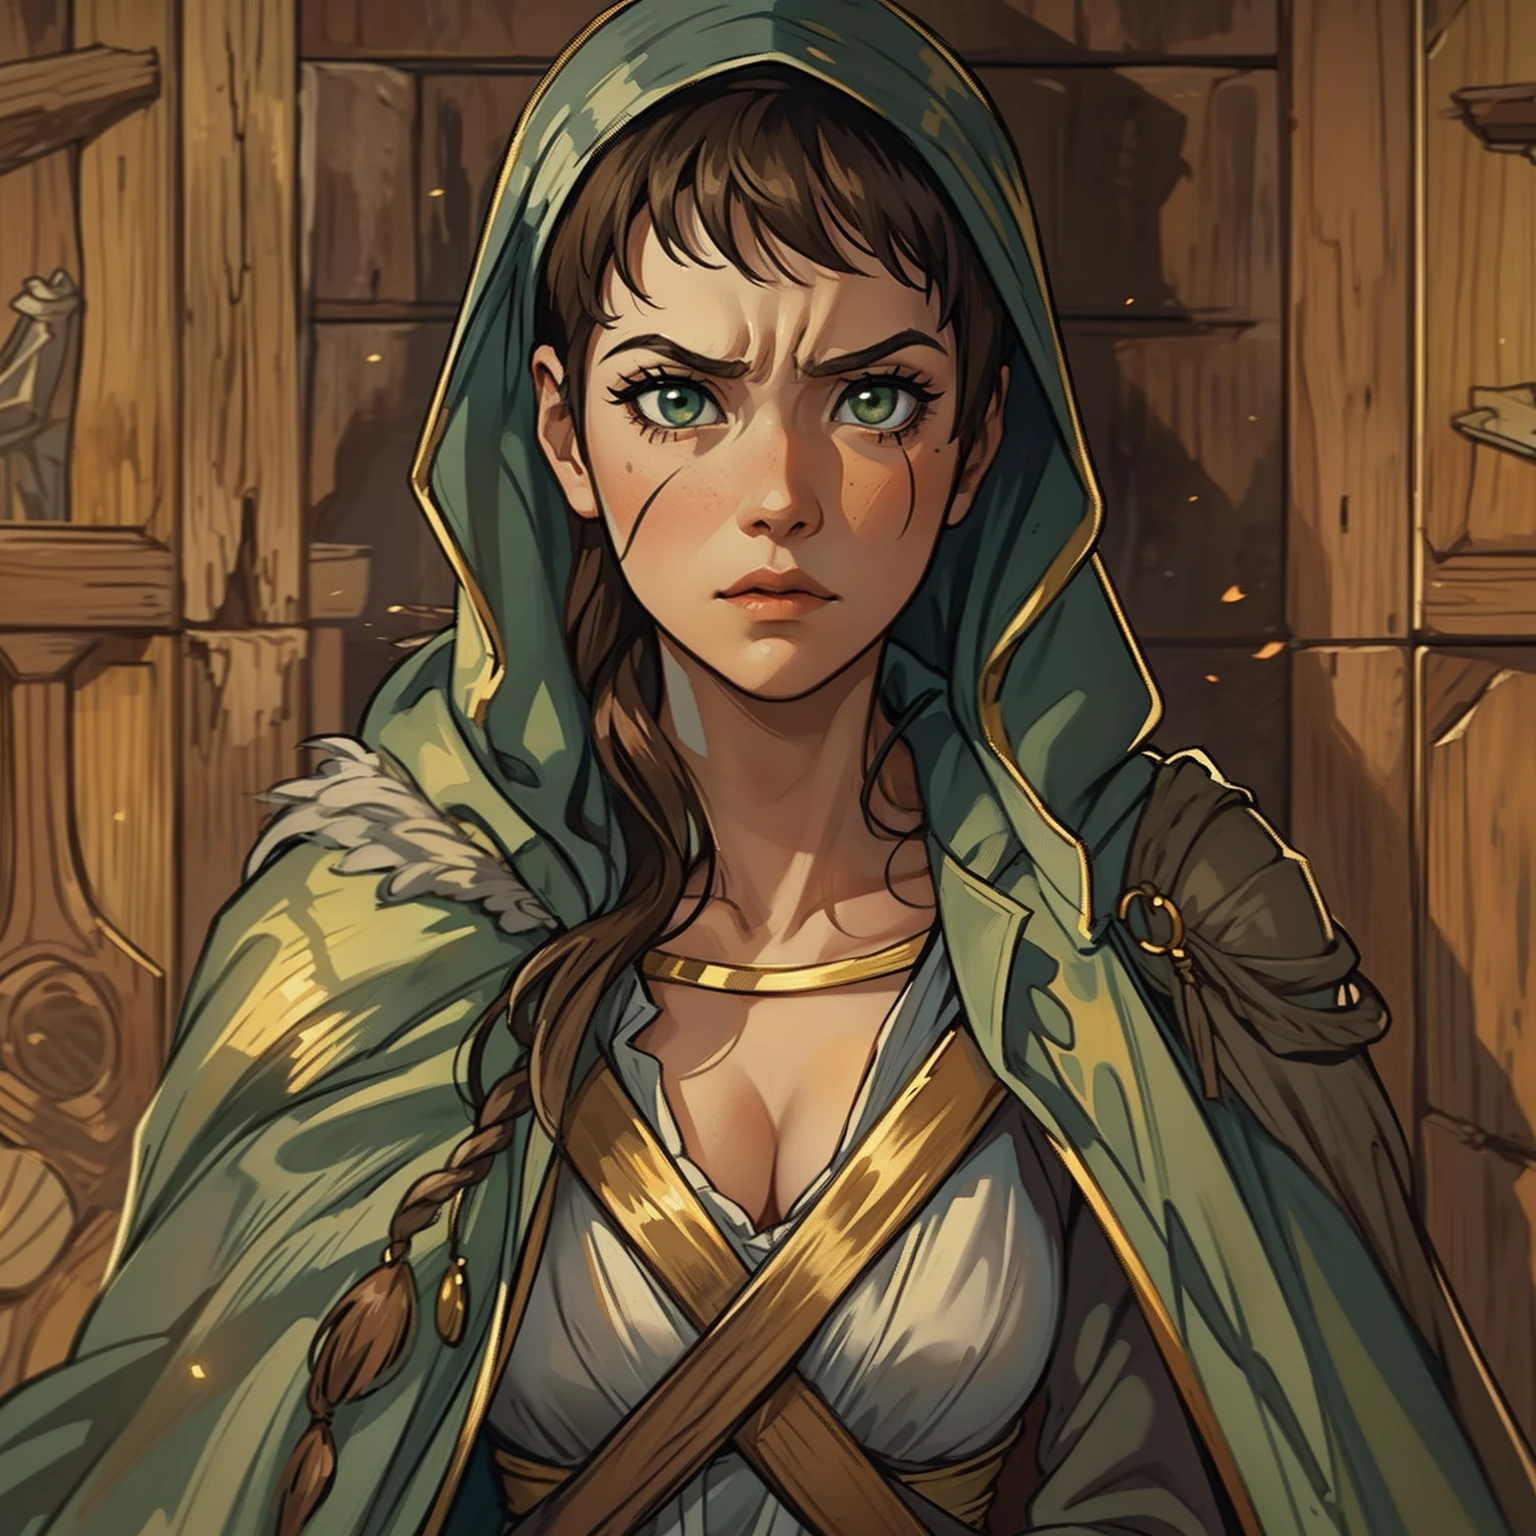 Uma bela mulher com olhos verdes e cabelos castanhos é uma feiticeira Mago vestido com vestes brancas e douradas Roupões nobres Uma princesa de magia e um olhar cansado ((gritando furiosa)), é borracha. ((corado)) papel de parede de madeira dramático Uma arte para um RPG Uma arte medieval para um RPG